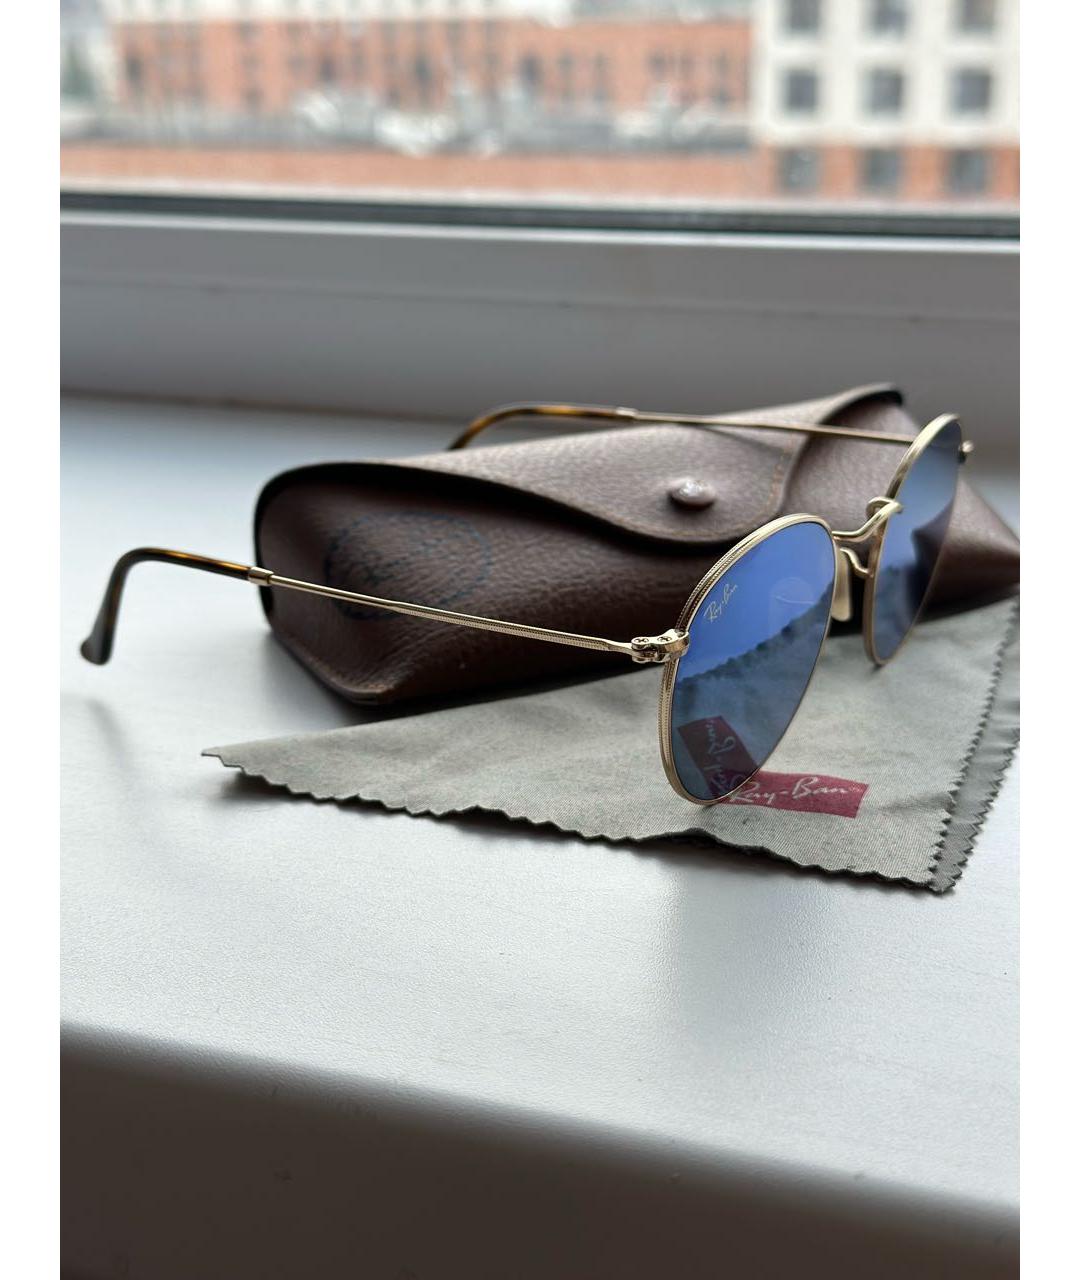 RAY BAN Голубые металлические солнцезащитные очки, фото 3